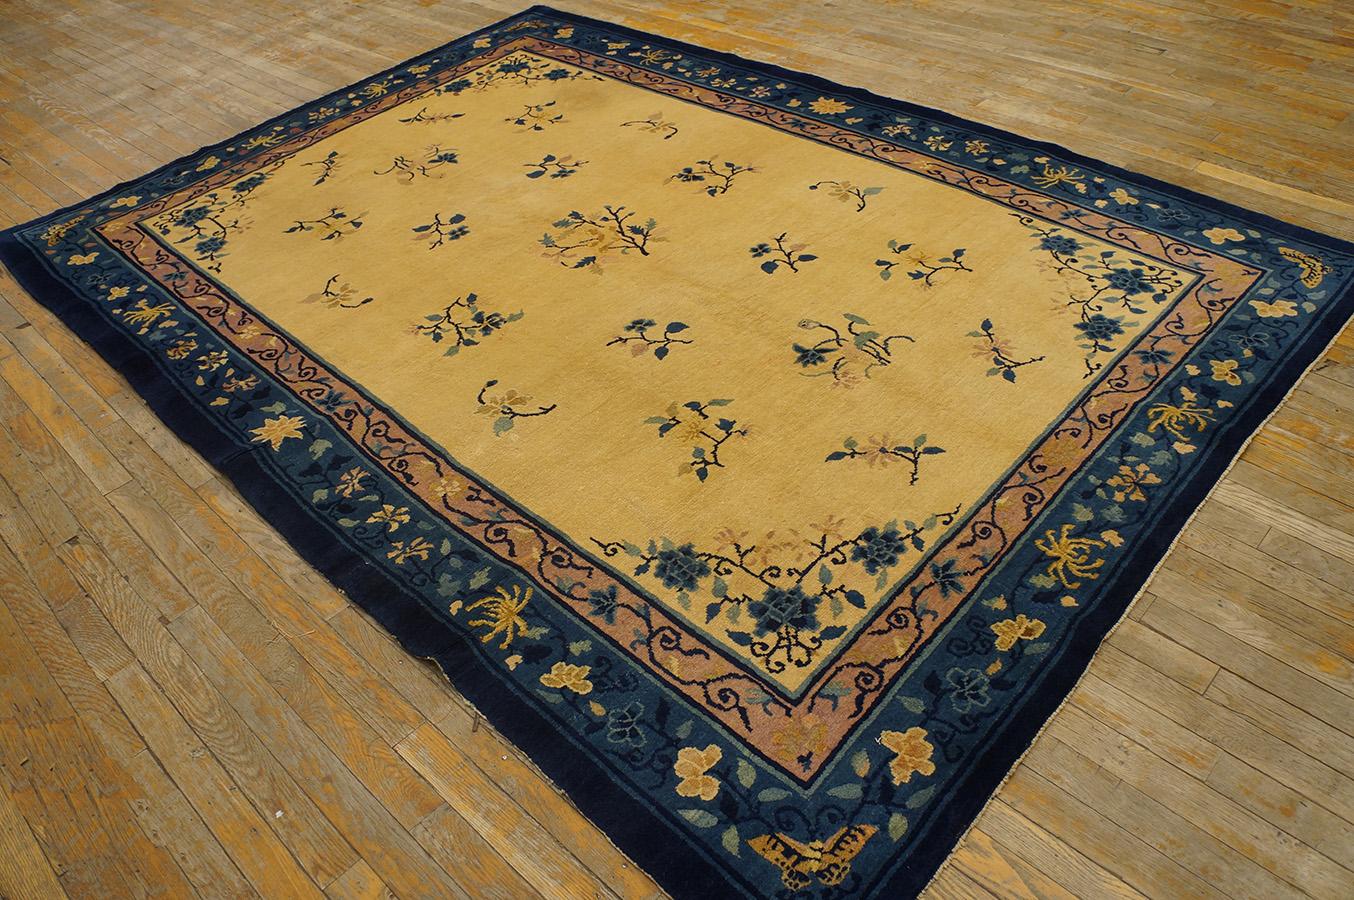 Antique Chinese Peking rug, size: 6' 2'' x 8' 10''.